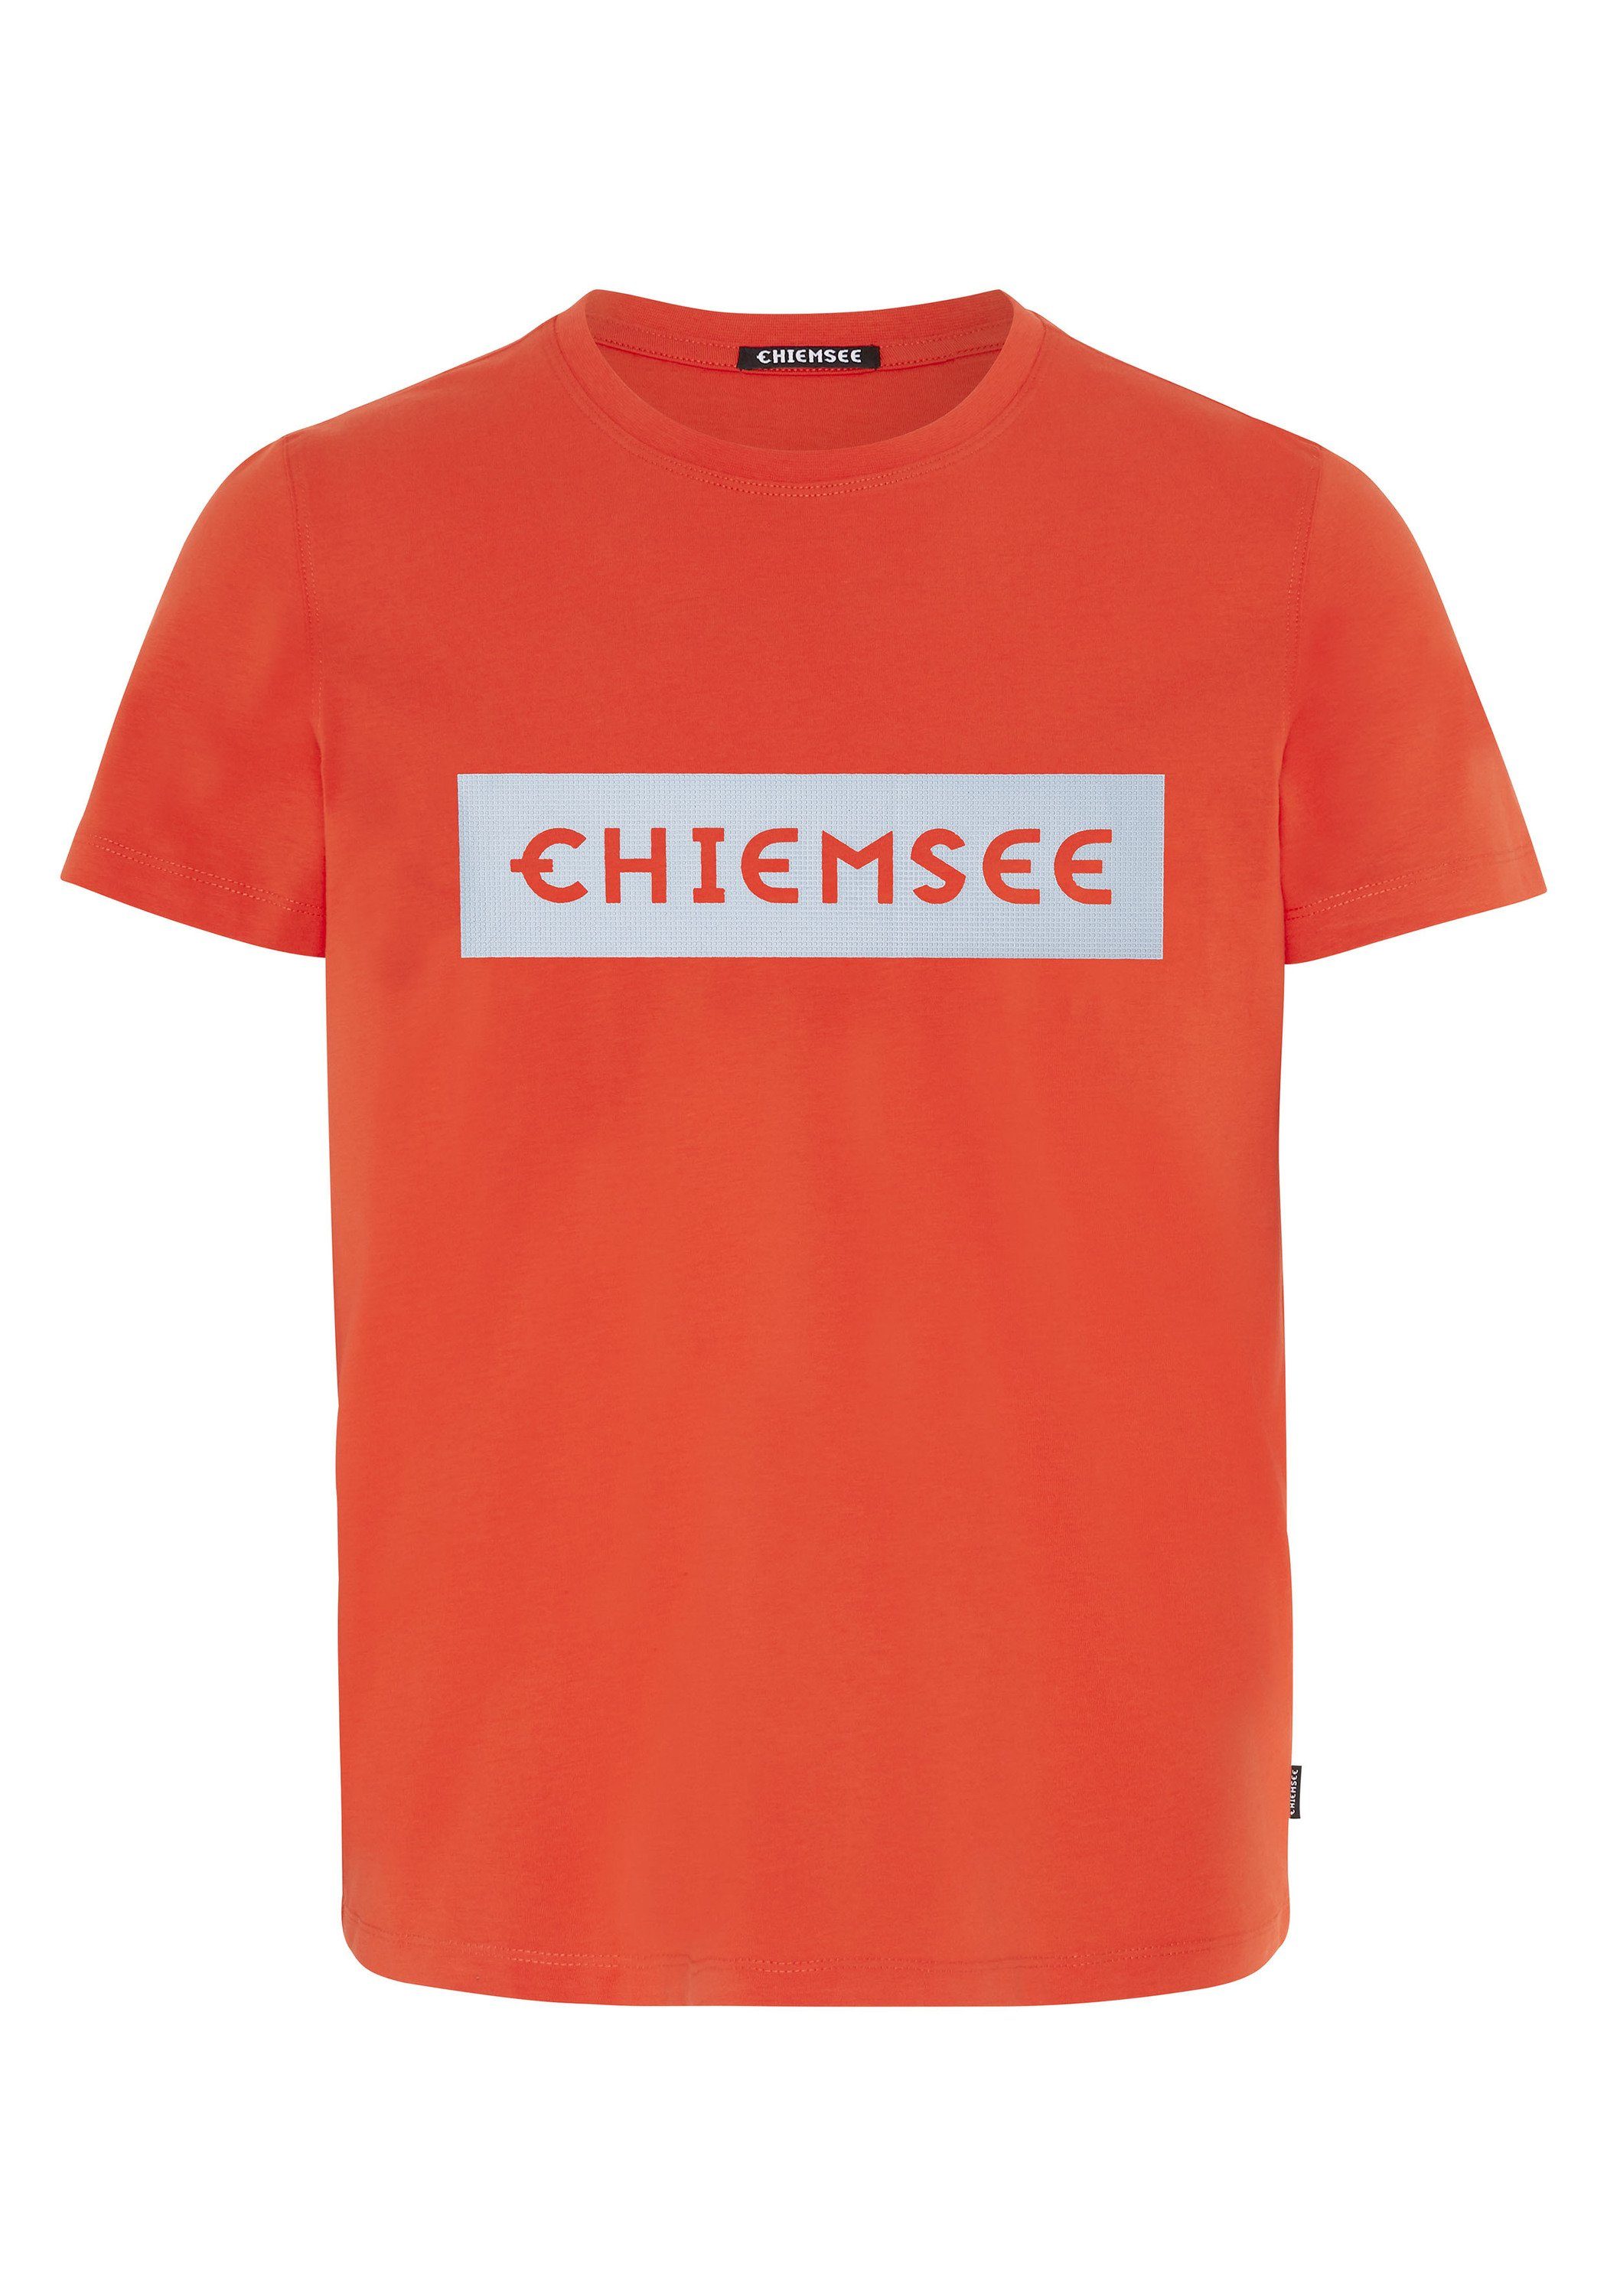 Chiemsee Print-Shirt T-Shirt Markenschriftzug mit 1 plakativem